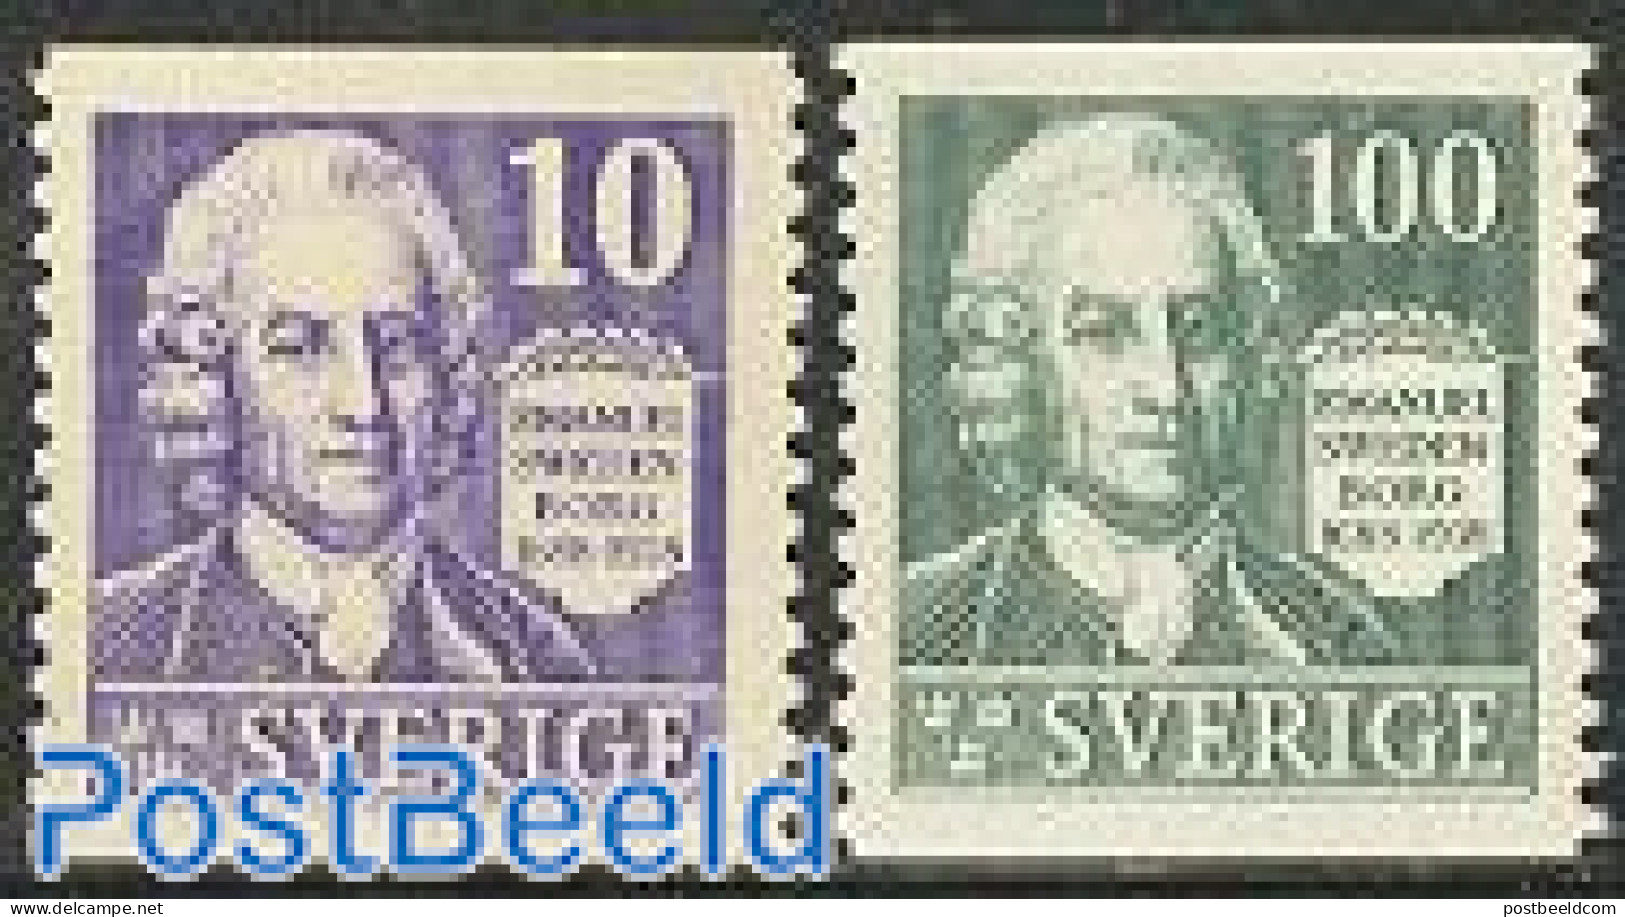 Sweden 1938 E. Swedenborg 2v :=:, Mint NH, Science - Chemistry & Chemists - Ongebruikt